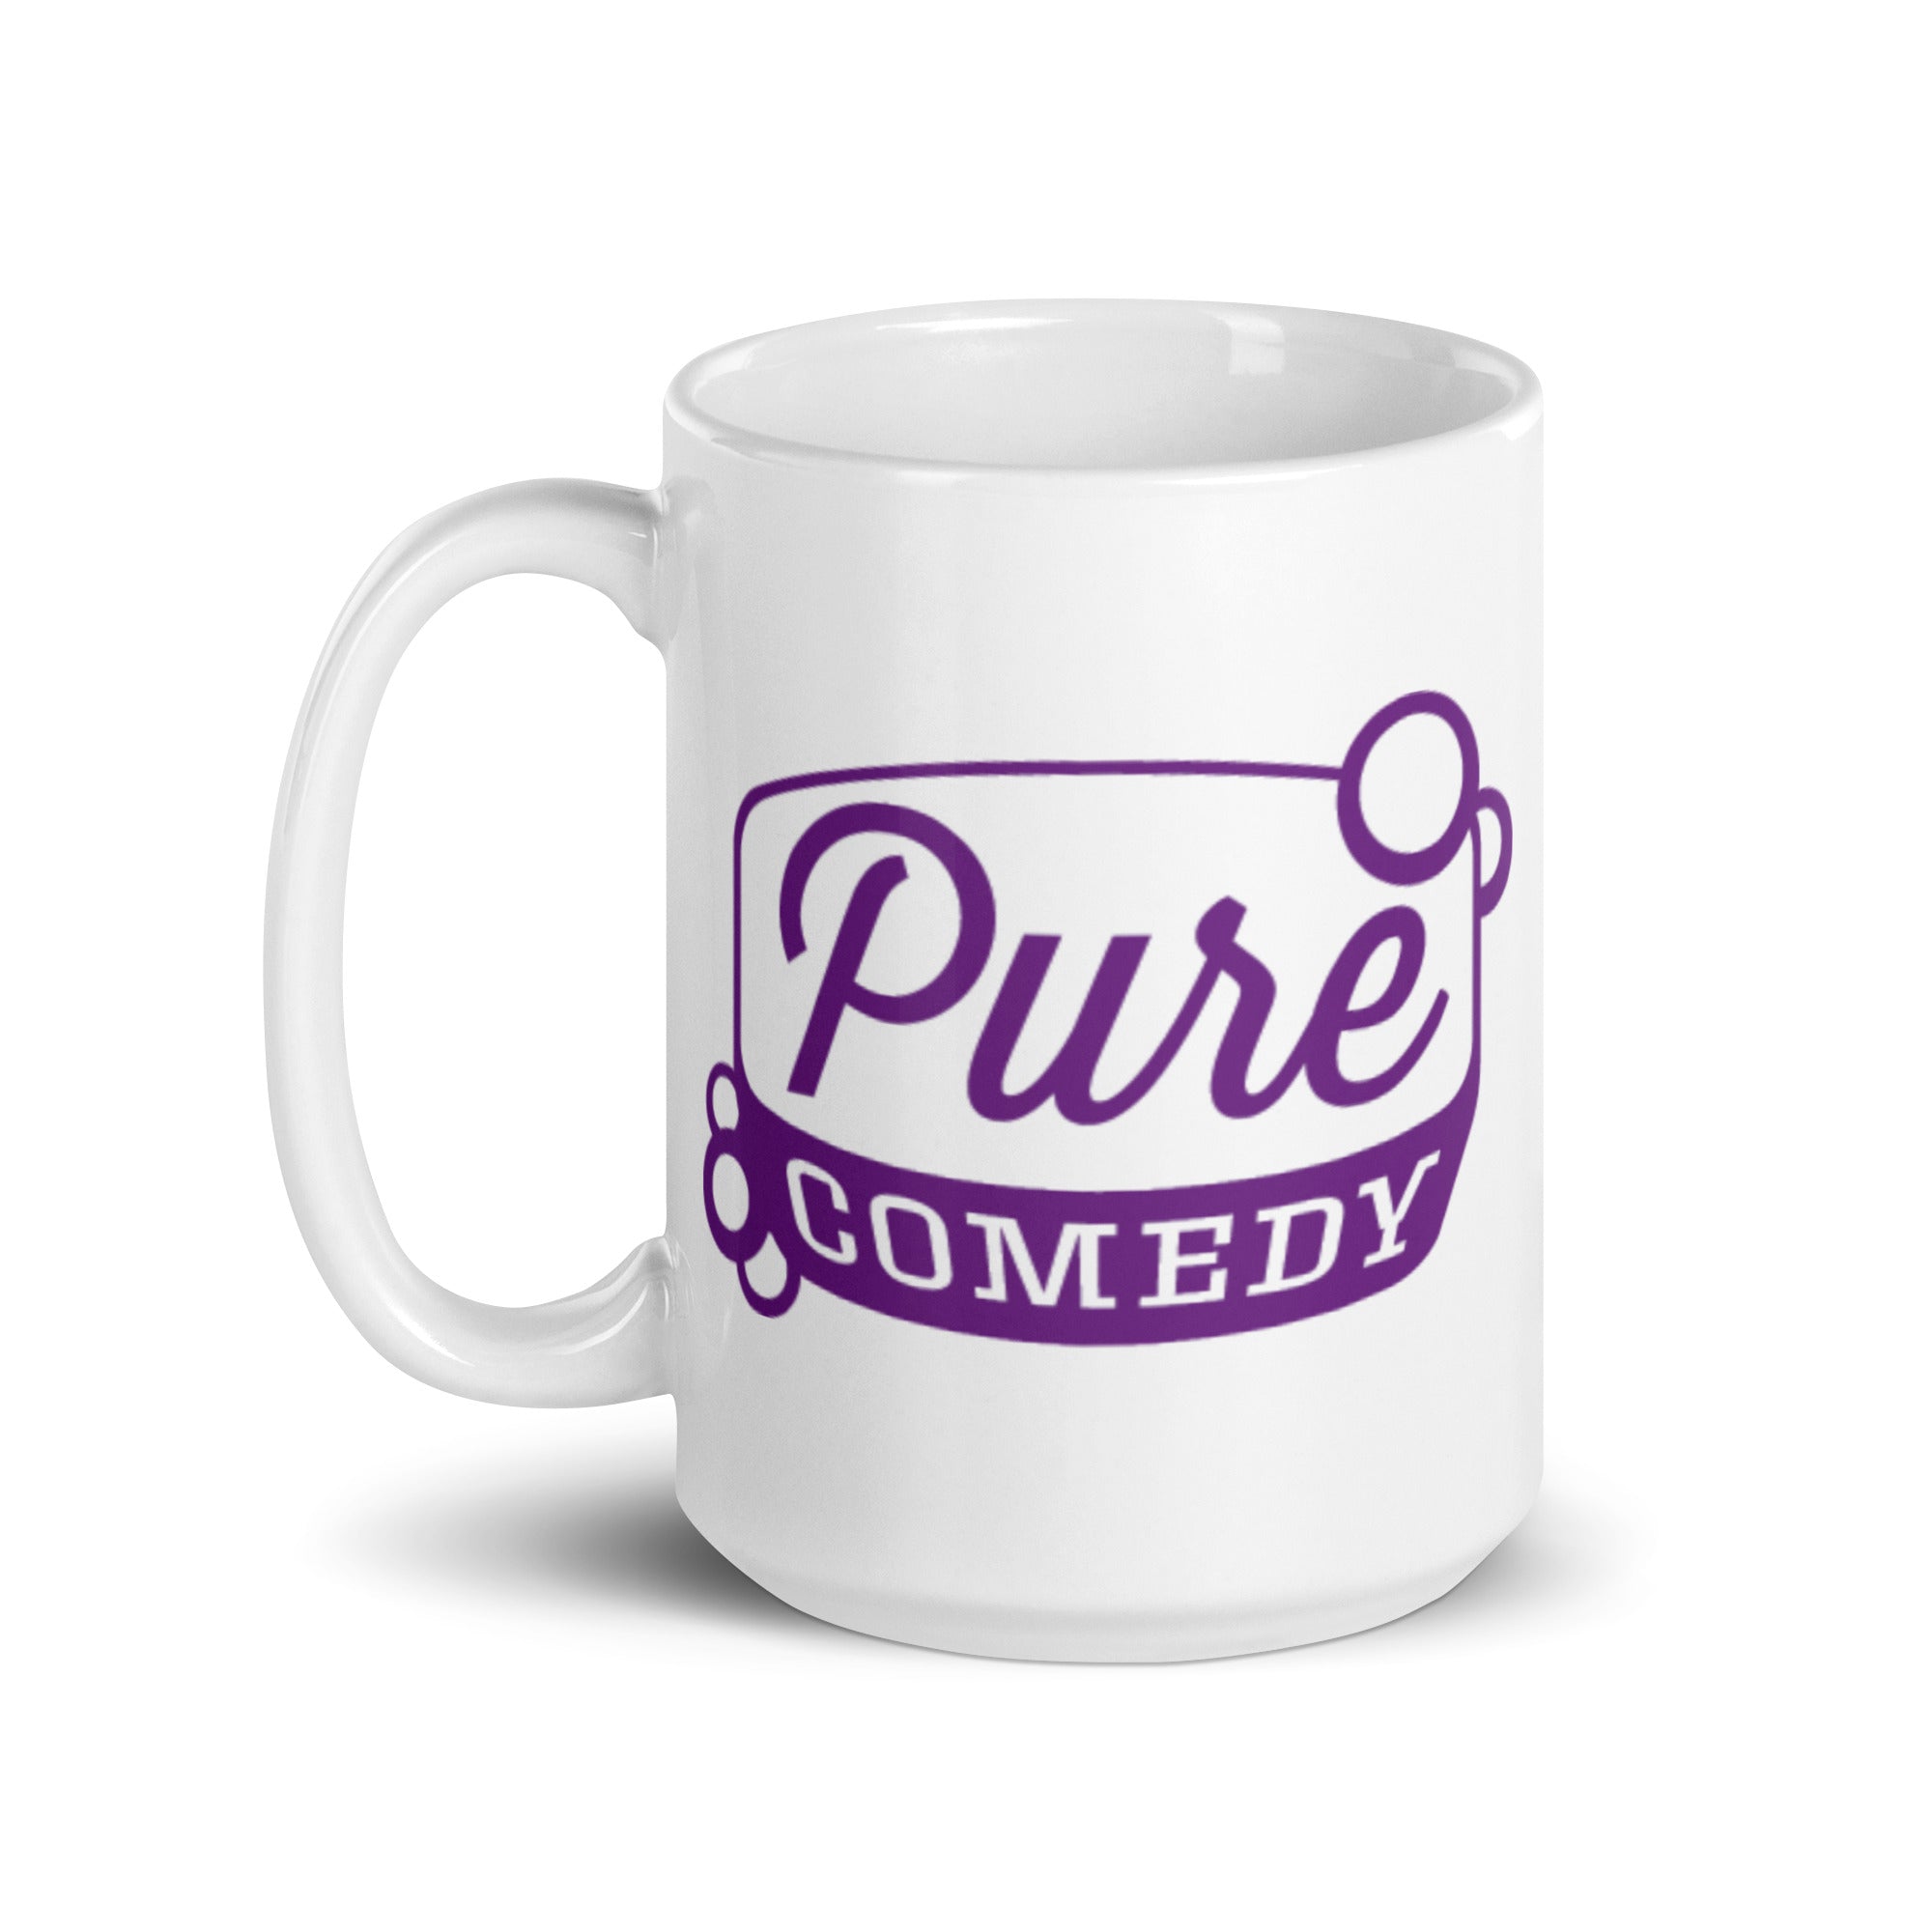 Pure Comedy: Mug